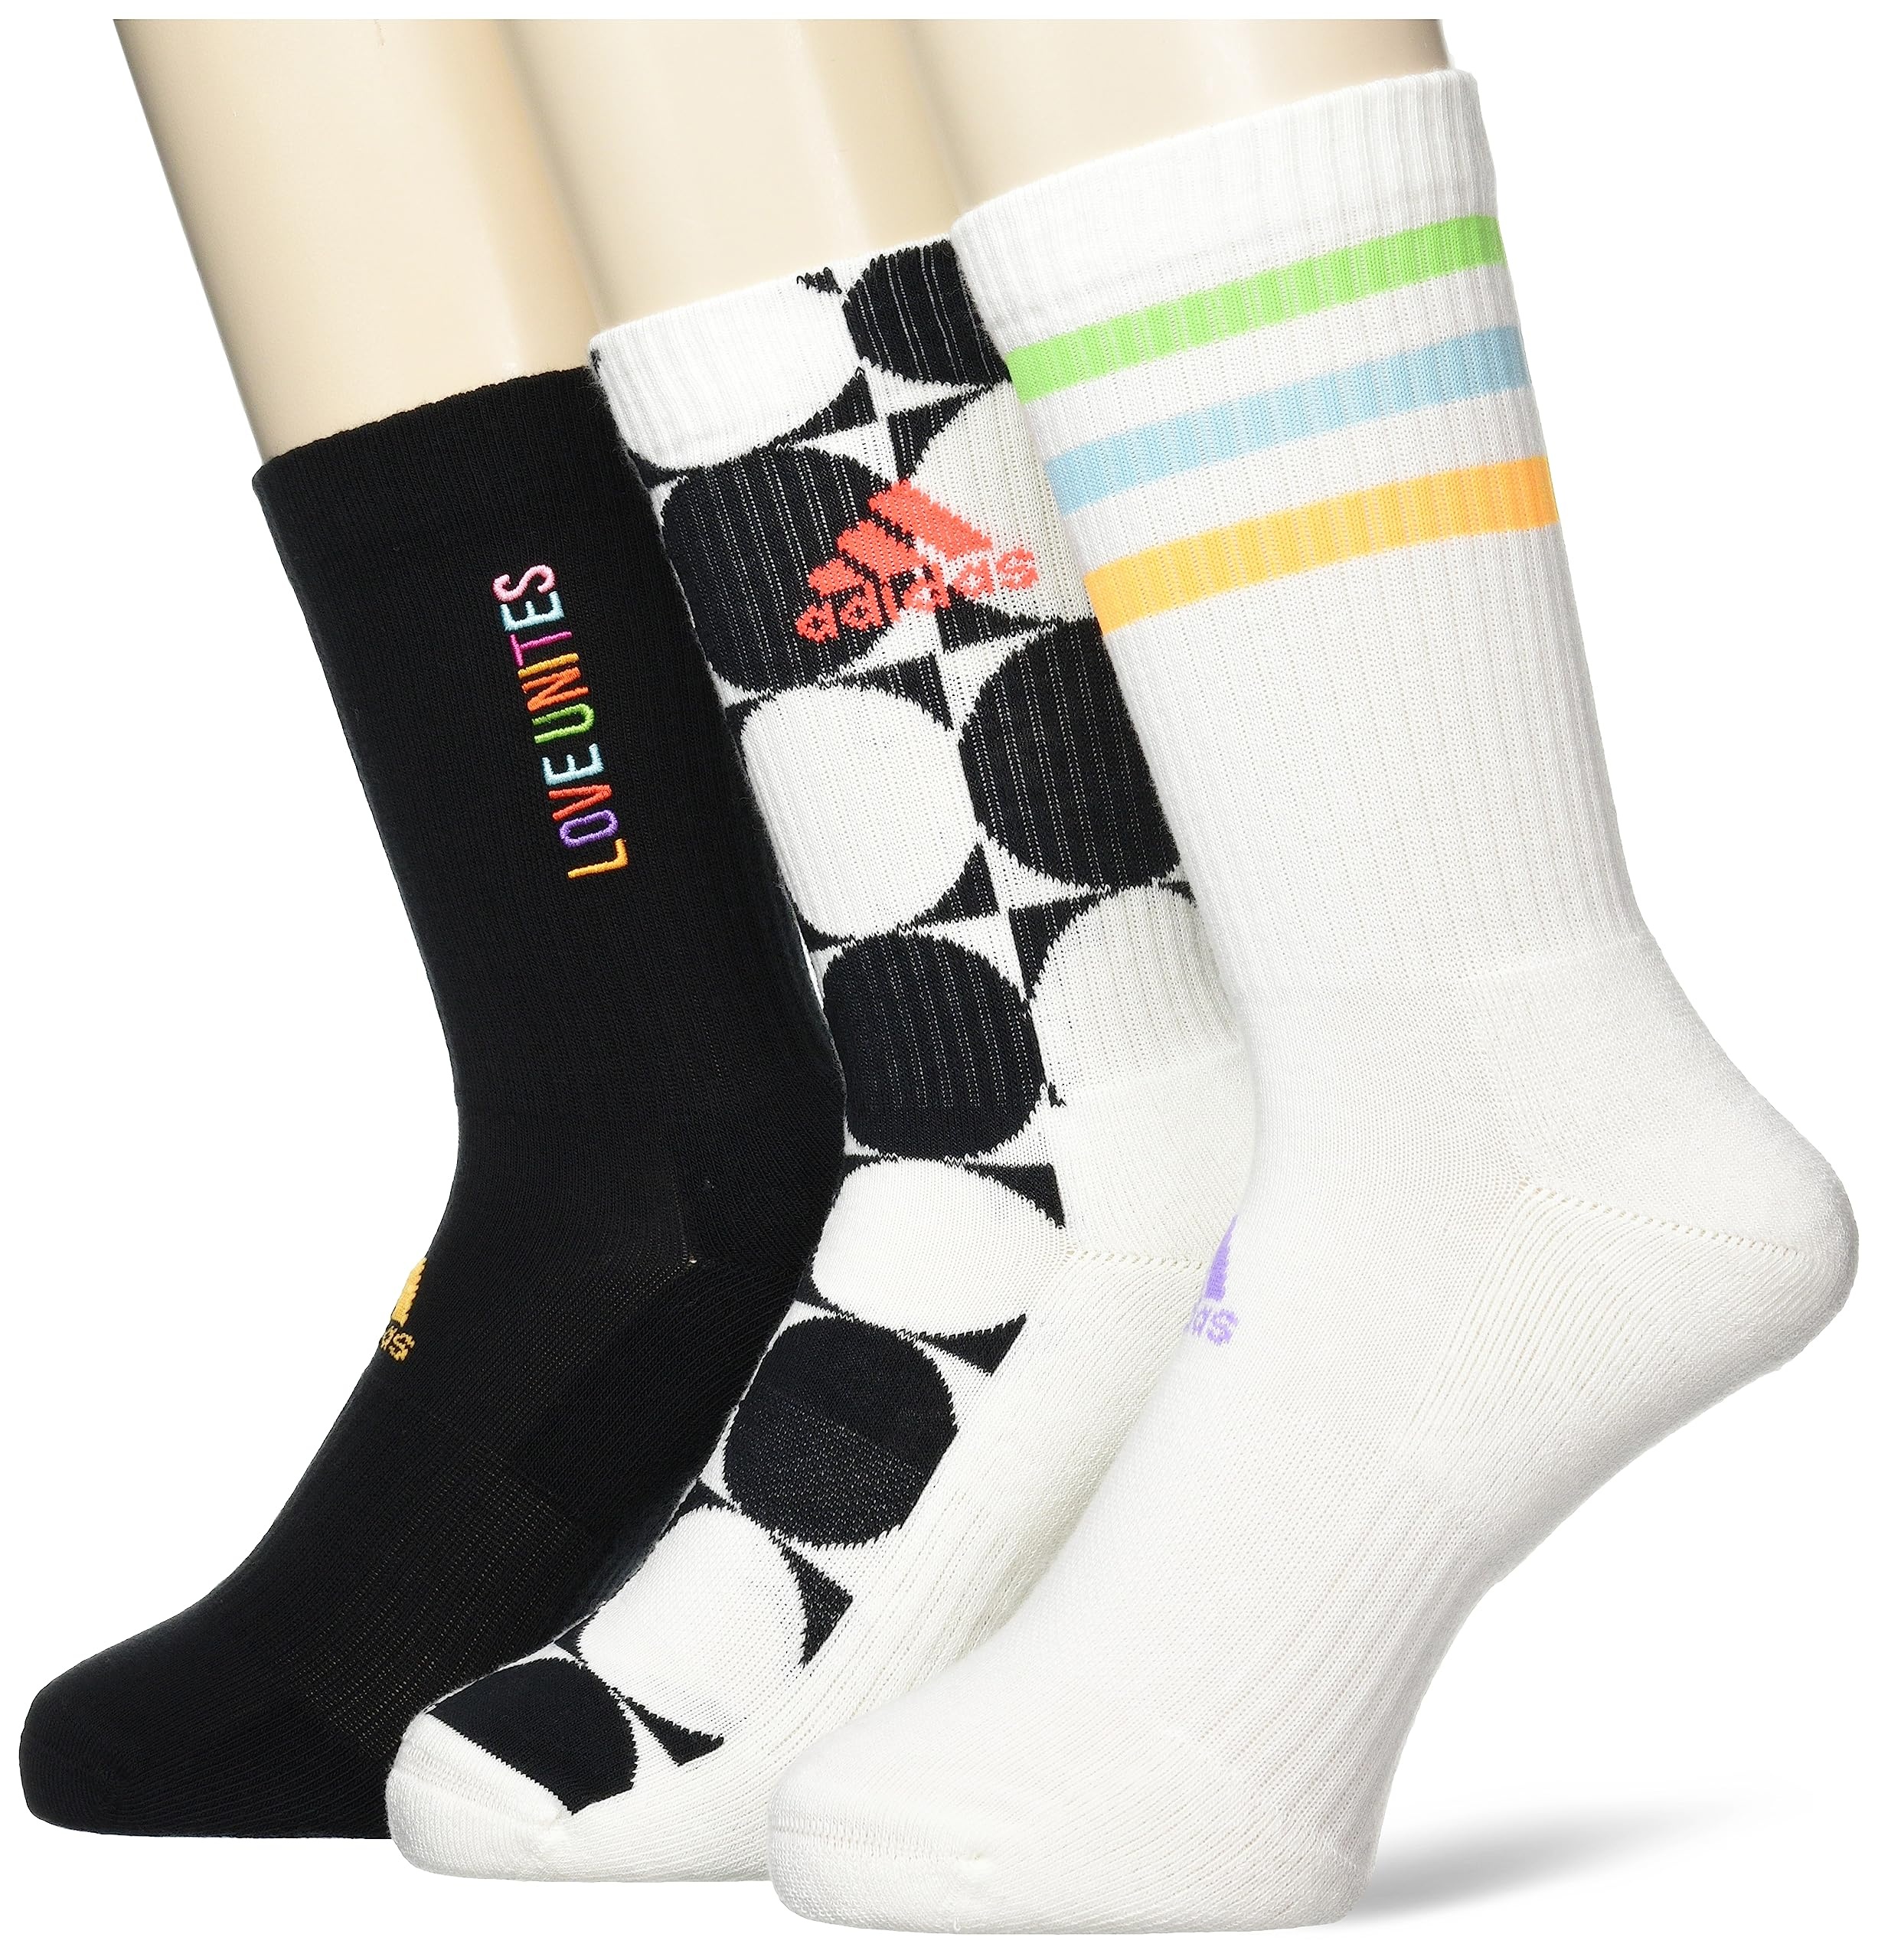 adidas, Pride Love Unites, Socken (3 Paare), Aus Weiß/Schwarz/Mehrfarbig, S, Unisex-Adult